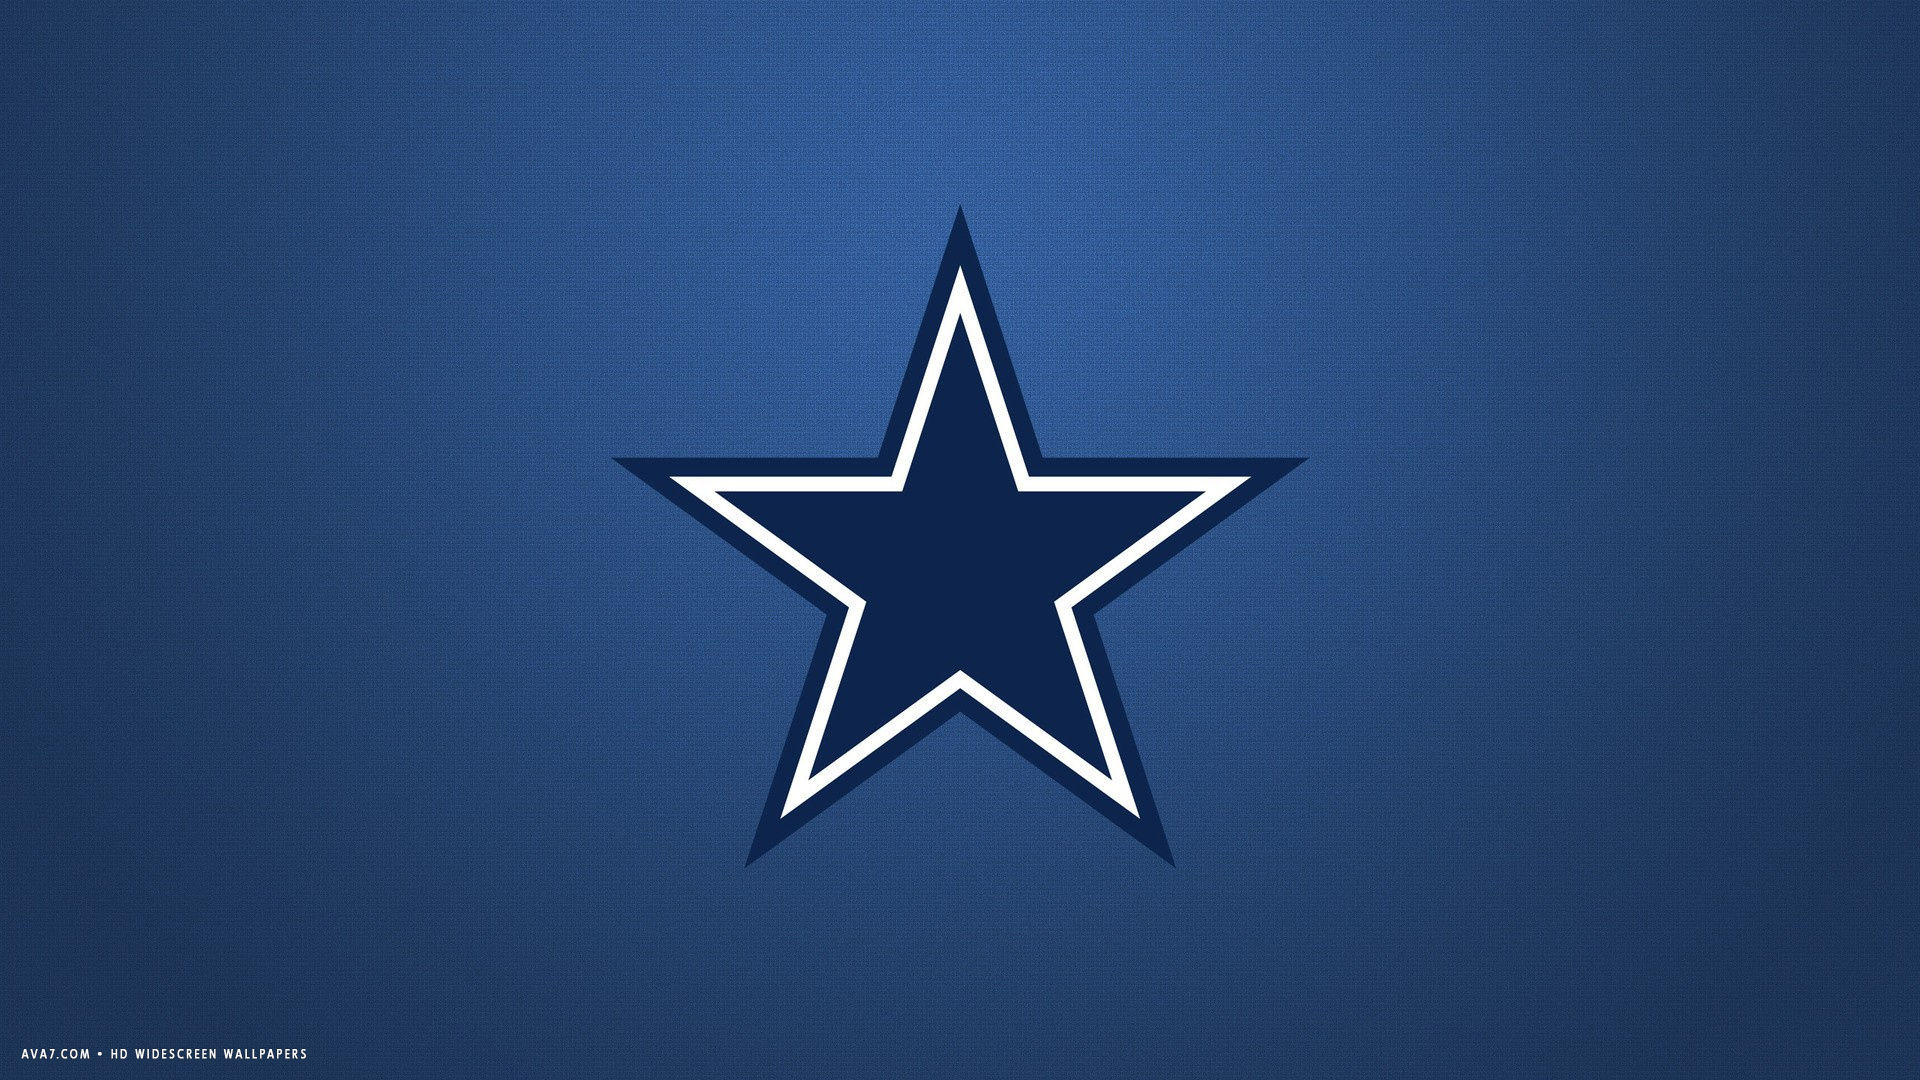 Dallas Cowboys Nfl Football Team HD Widescreen Wallpaper